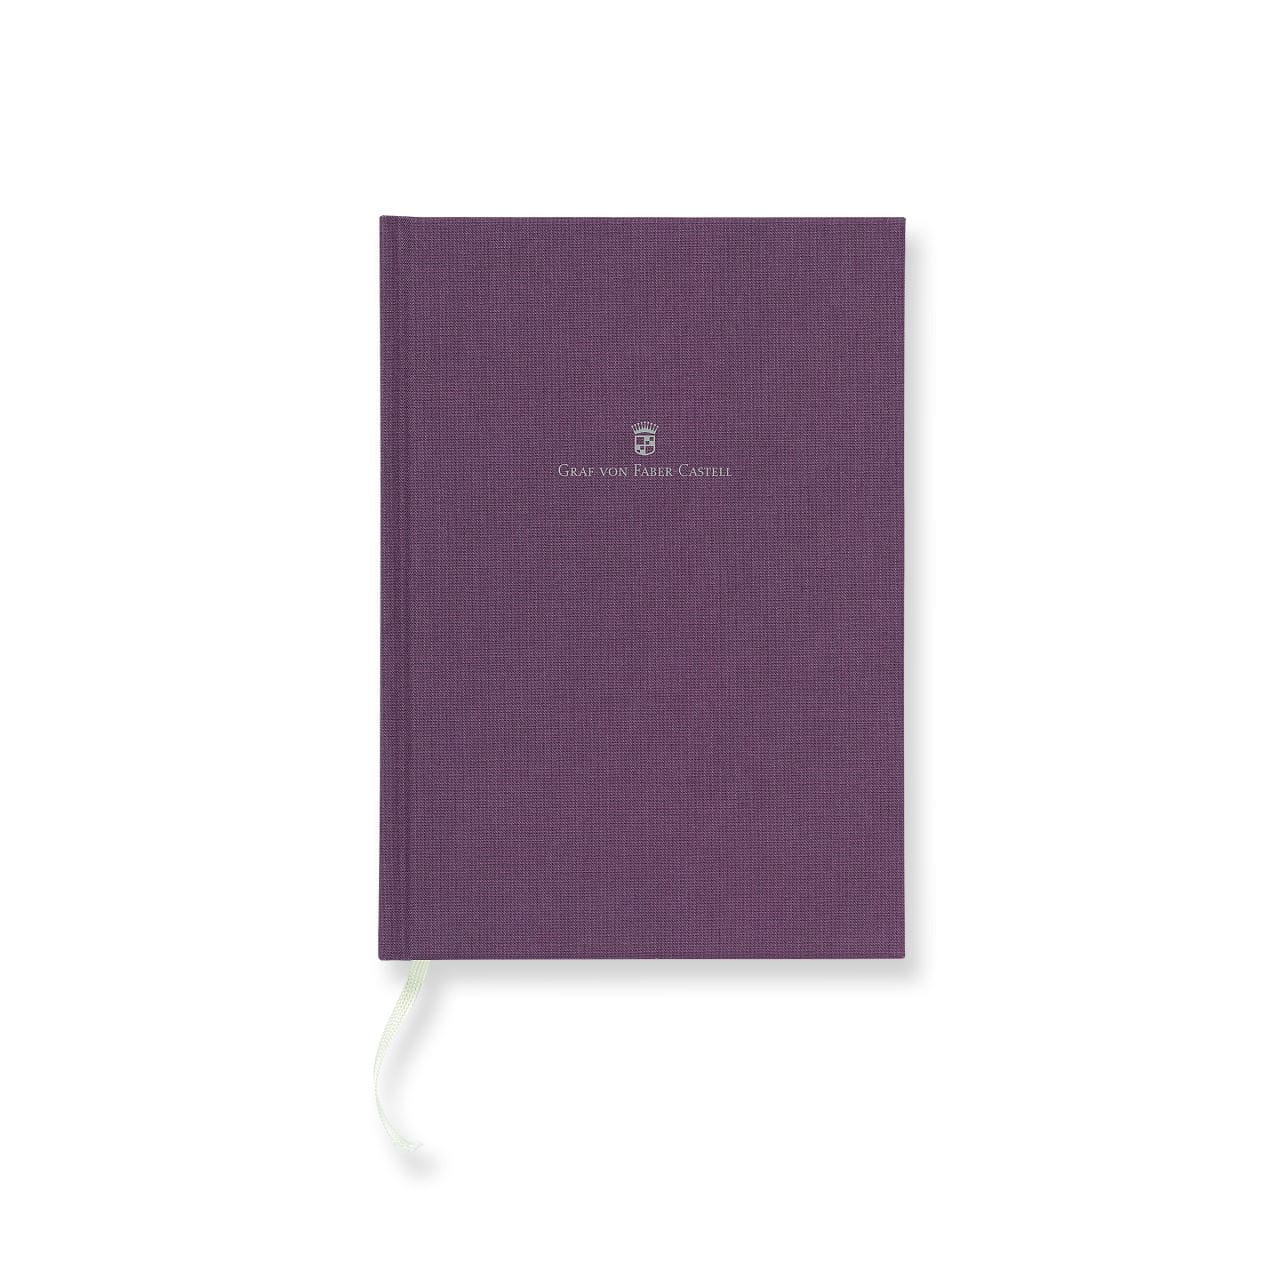 Graf-von-Faber-Castell - Book con copertina in lino formato A5, Viola